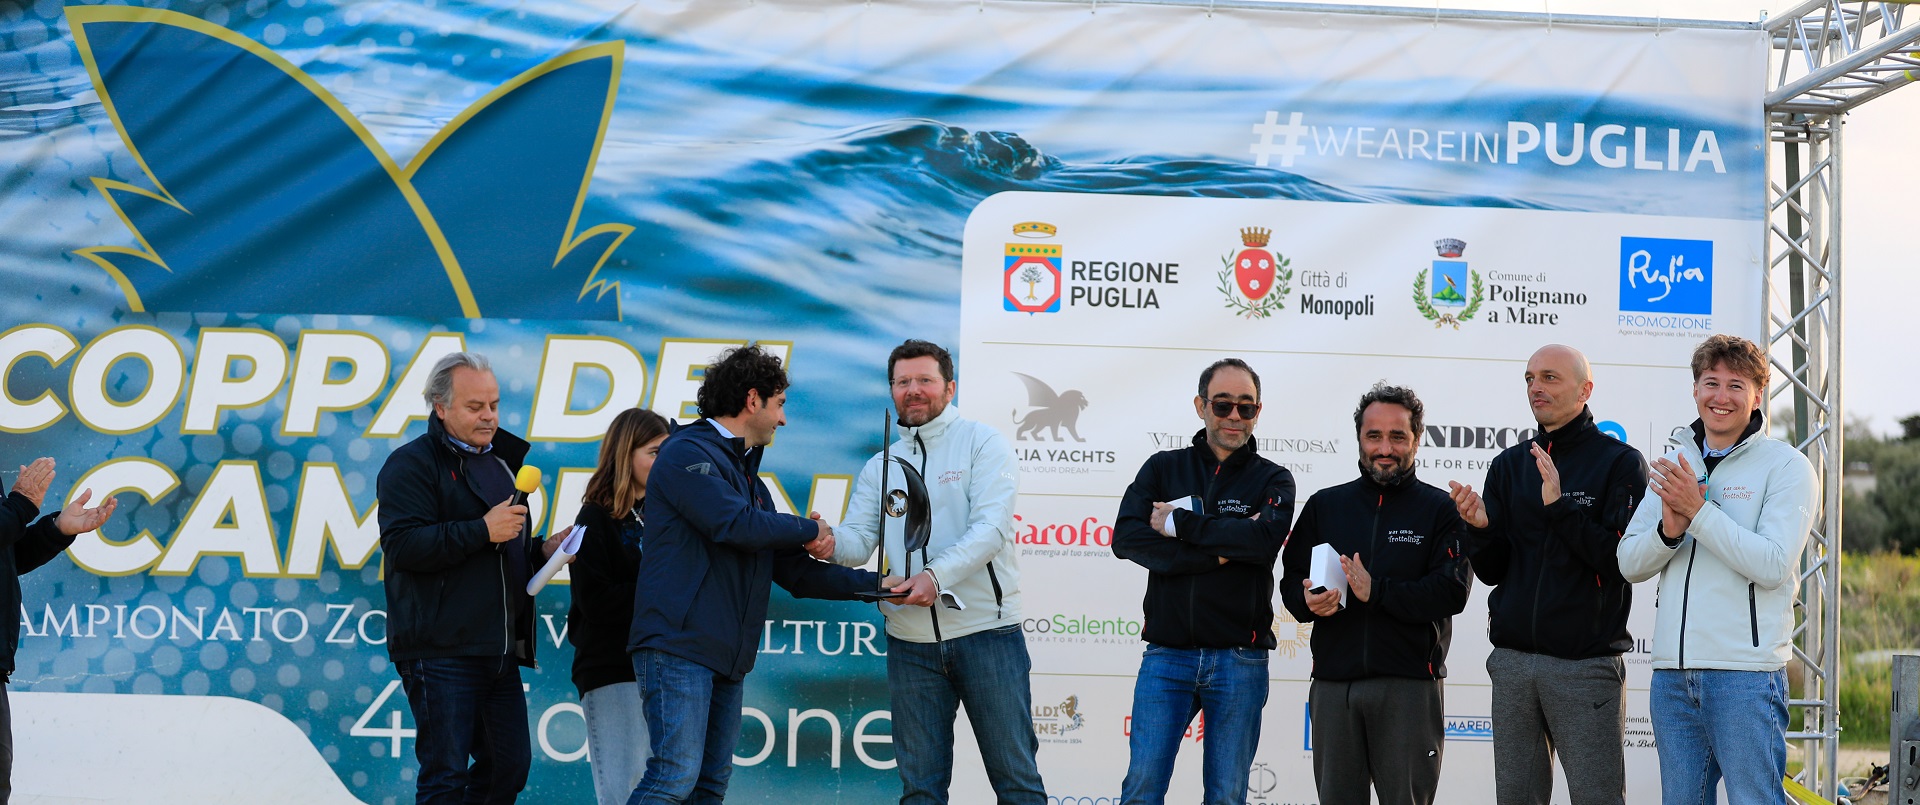 Bottino pieno per Trottolina Bellikosa race alla 4^ edizione della Coppa dei Campioni – Trofeo Italia Yachts